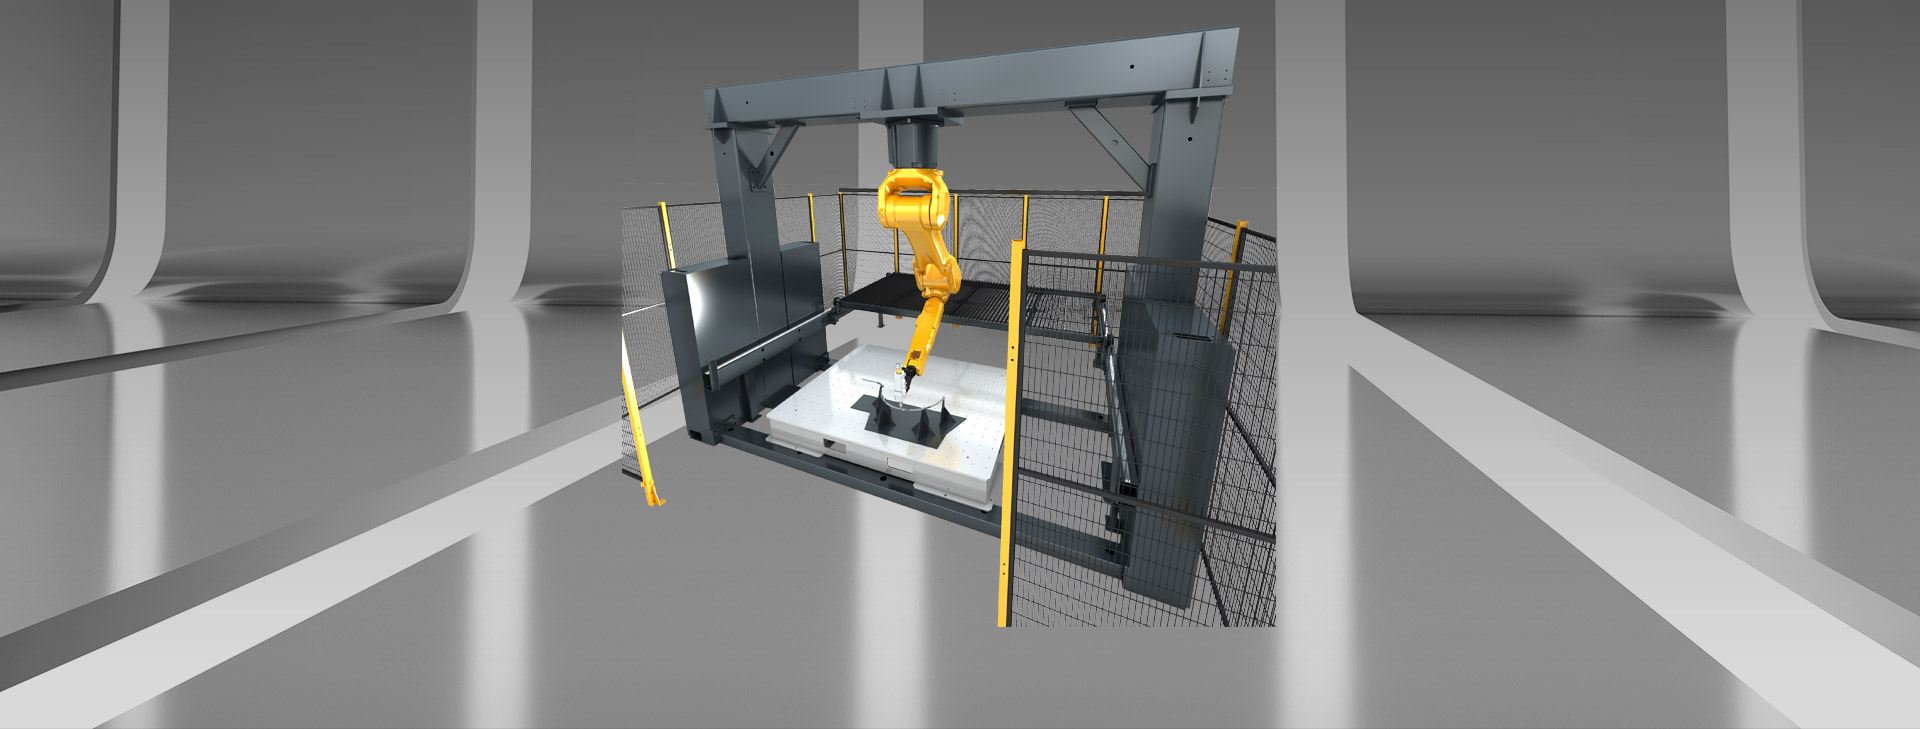 3D робот лазерной резки с Gantry структуры